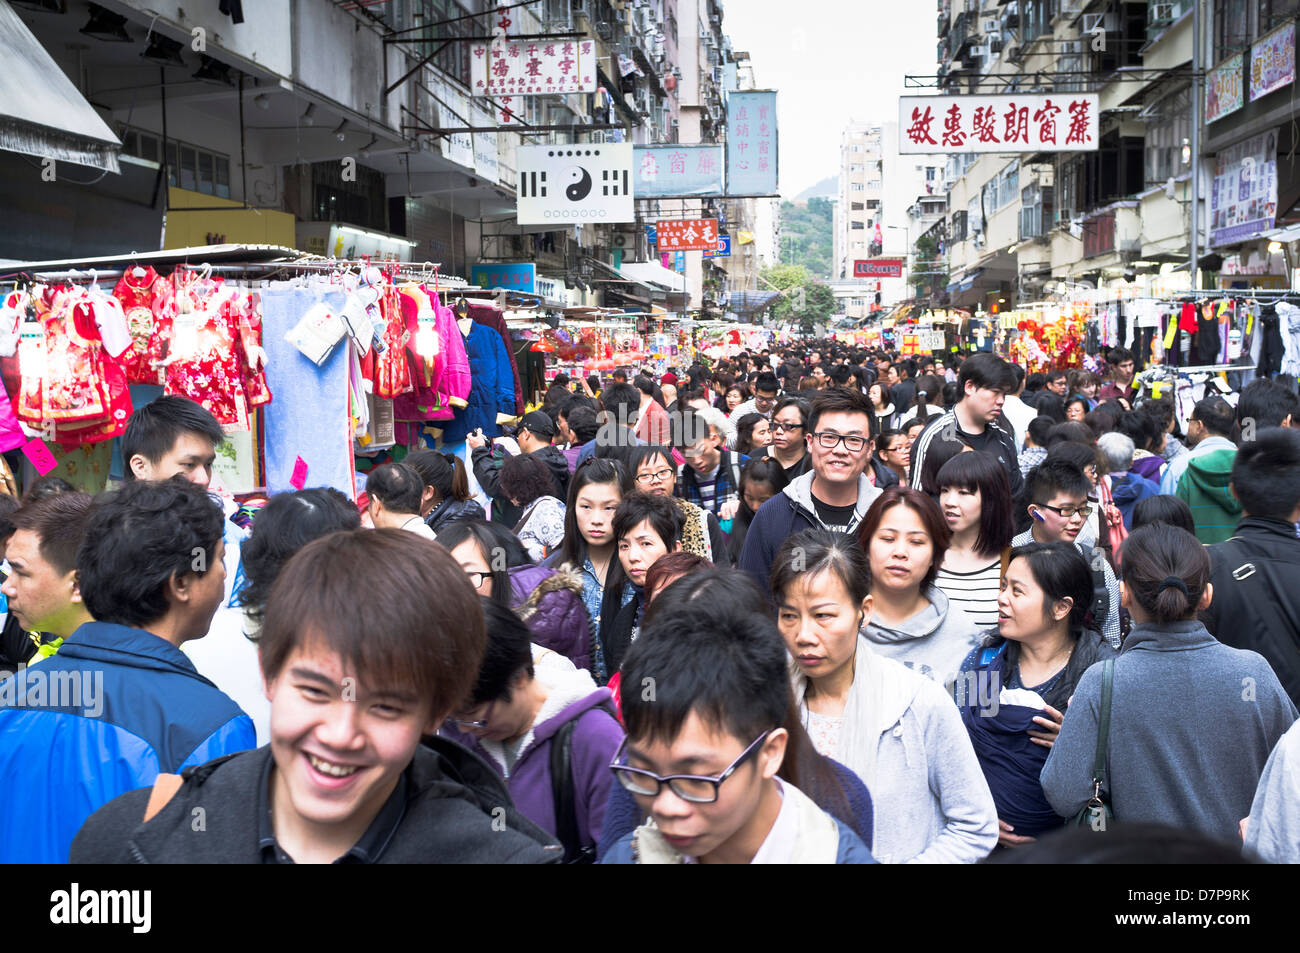 dh Ladies Market tung choi St MONG KOK HONG KONG La foule chinoise marché rue gens chine occupé foule mongkok surpeuplé scène de rue Banque D'Images